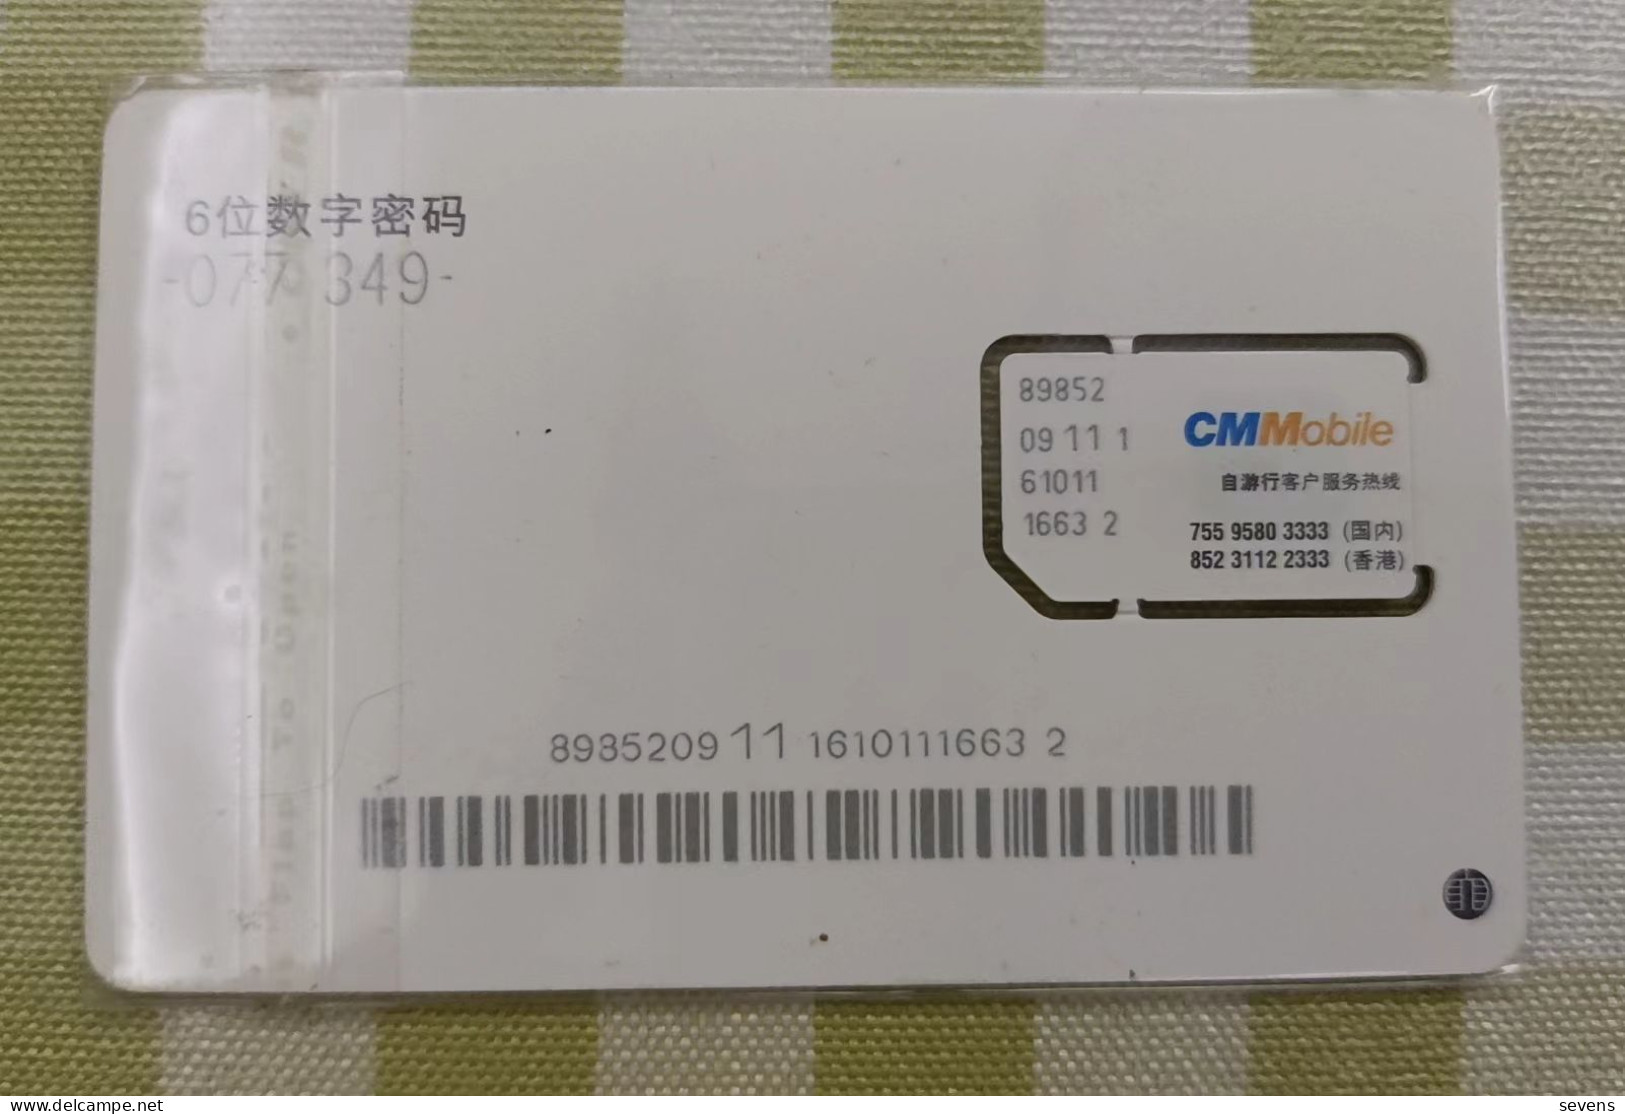 CM Bobile GSM SIM Card, For Tourist, Night View, Fixed Chip - Hongkong